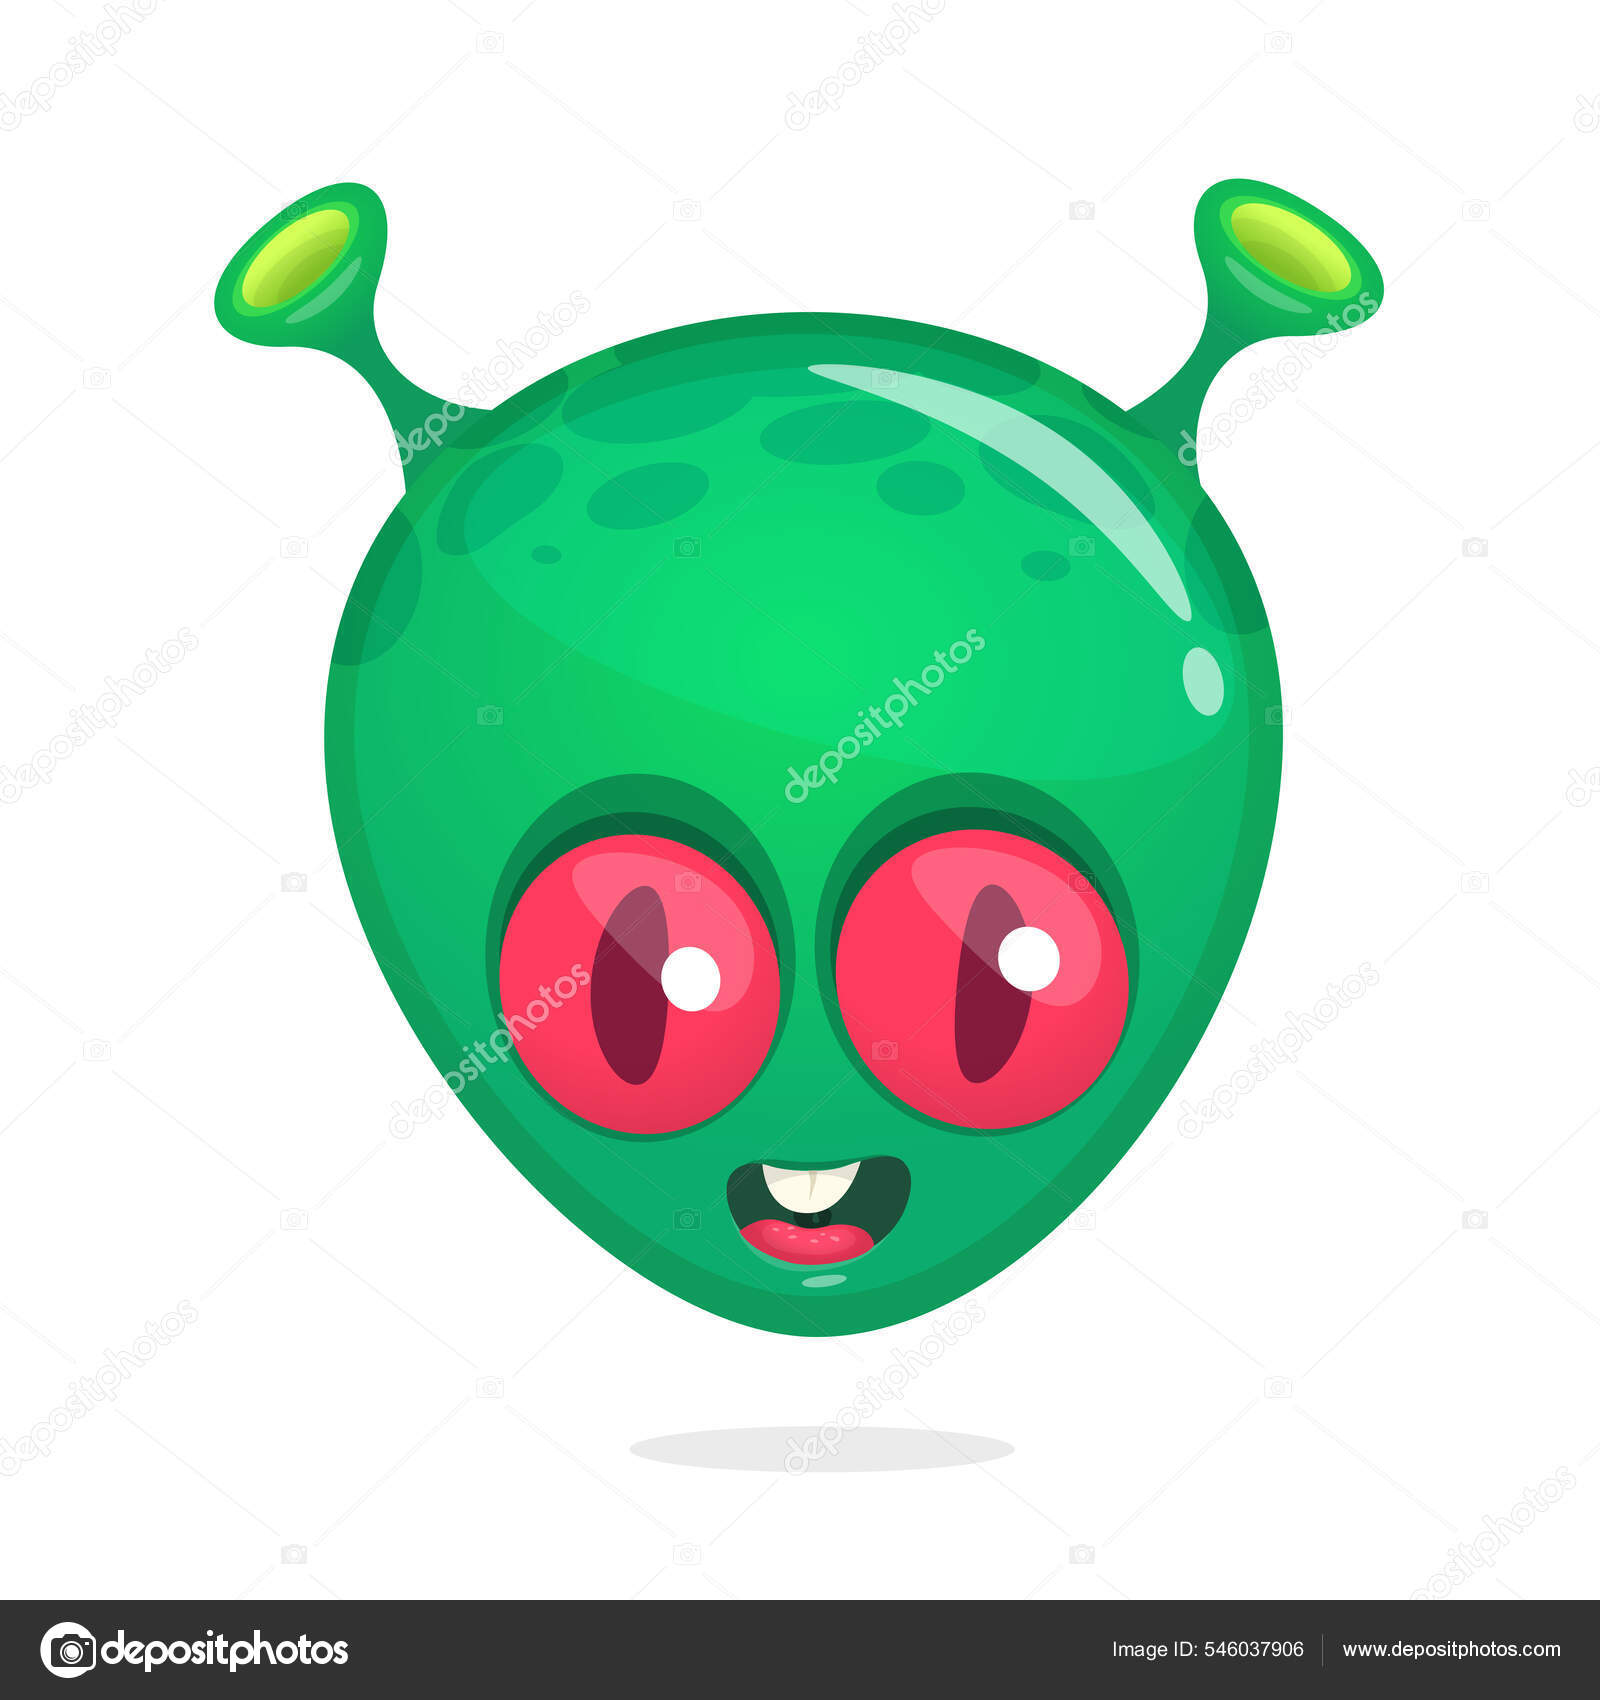 Um desenho animado de um alienígena com cabeça e olhos